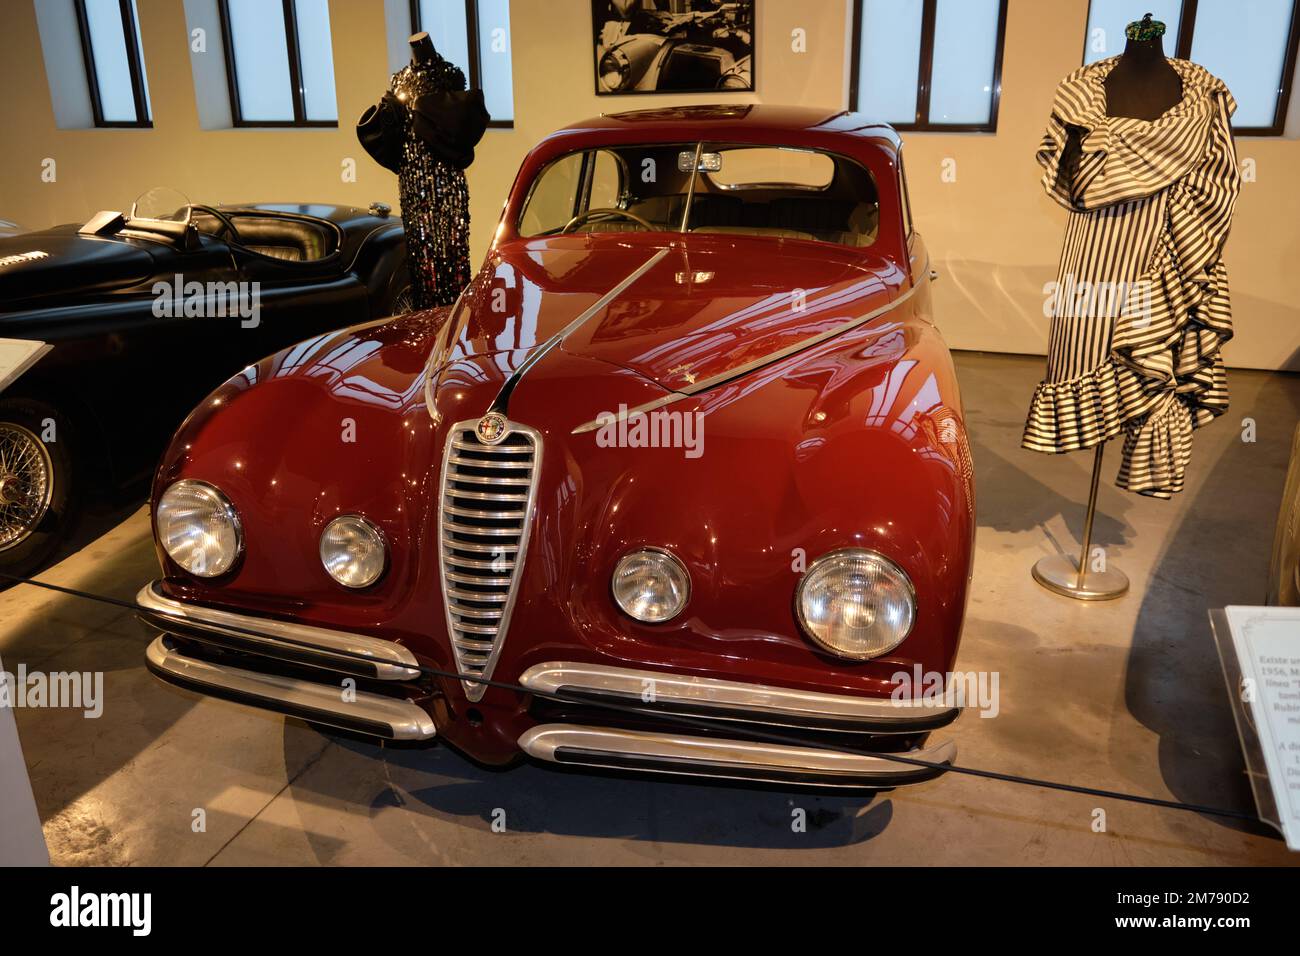 1948 Alfa Romeo 6c 2500 Sport au musée de l'automobile de Malaga, Espagne. Banque D'Images